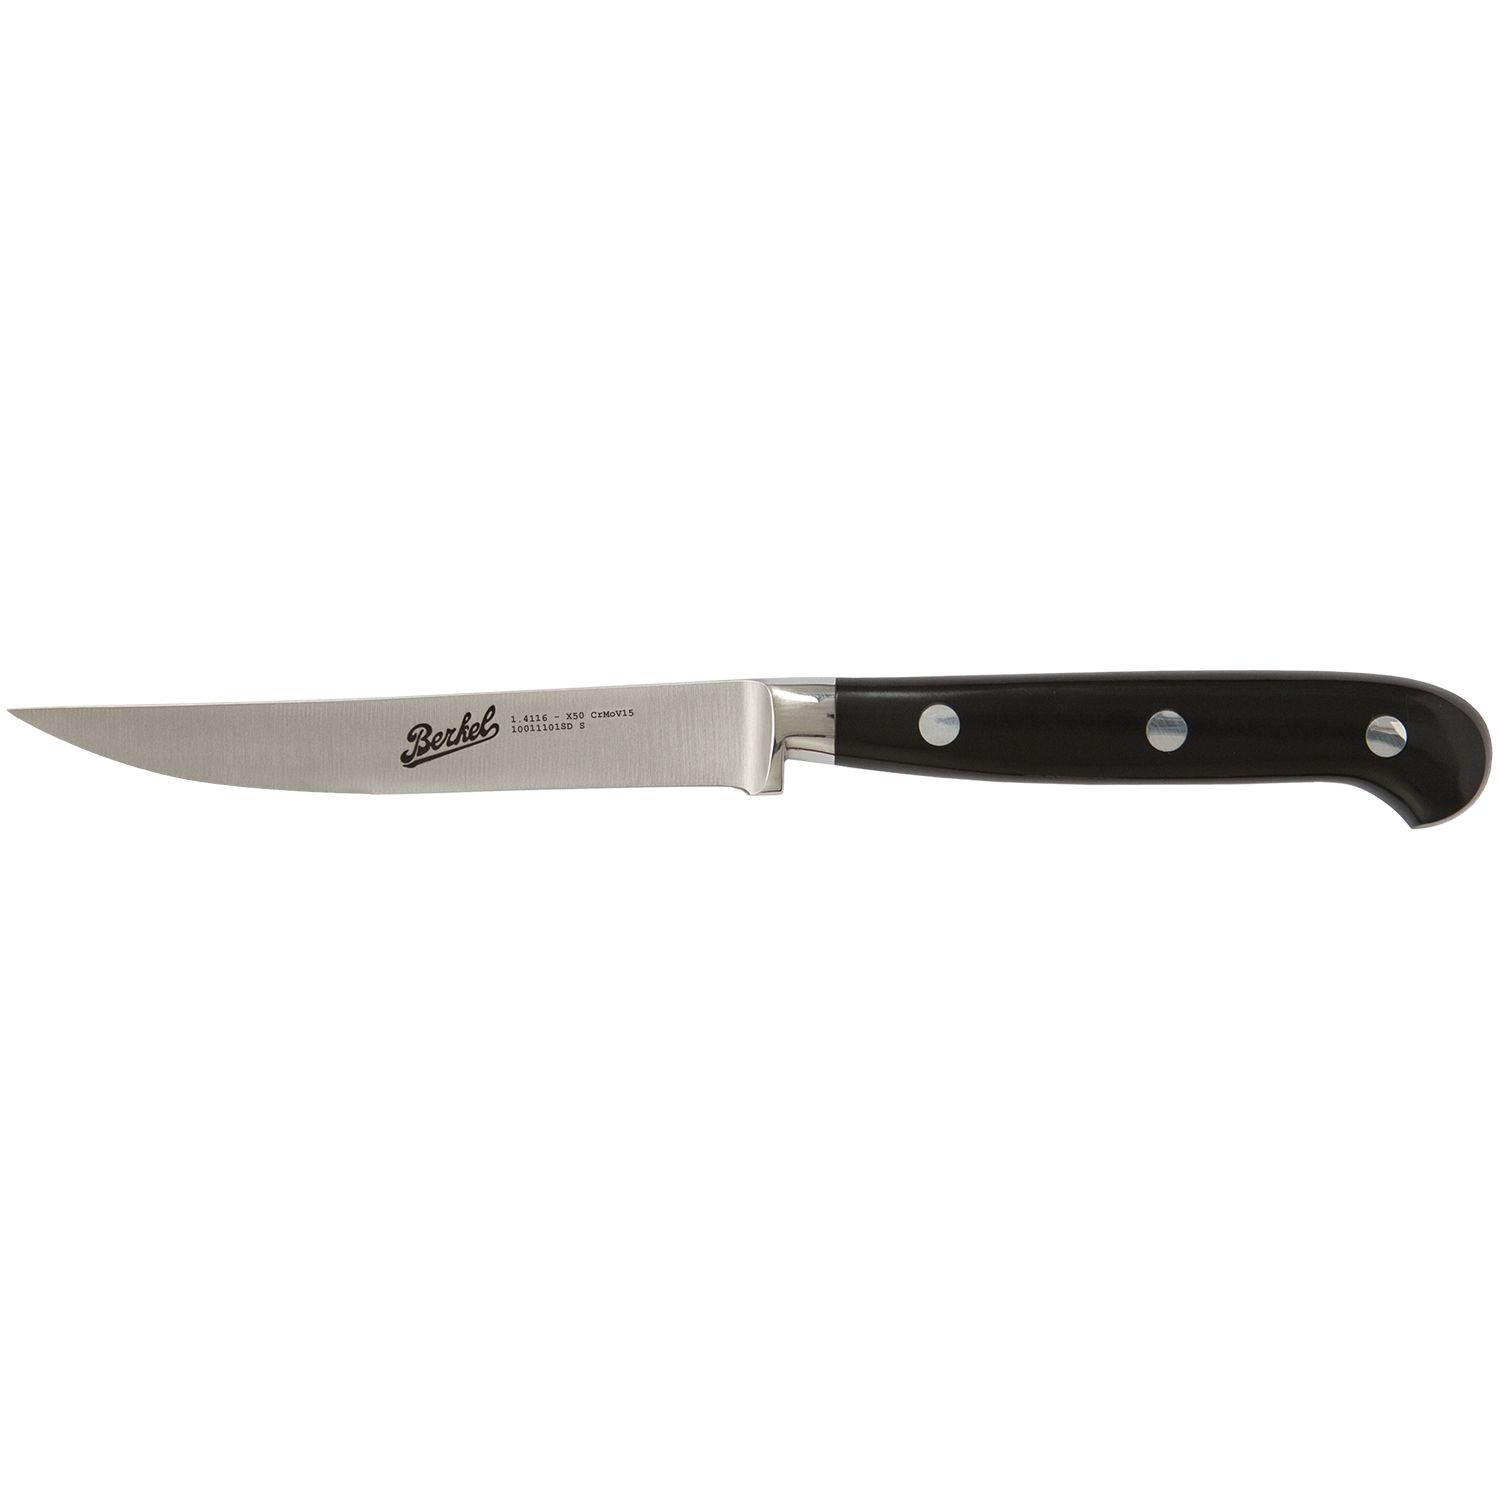 Steak Knife cm.11  Stainless Steel Berkel Adhoc Handle Glossy Black Resin